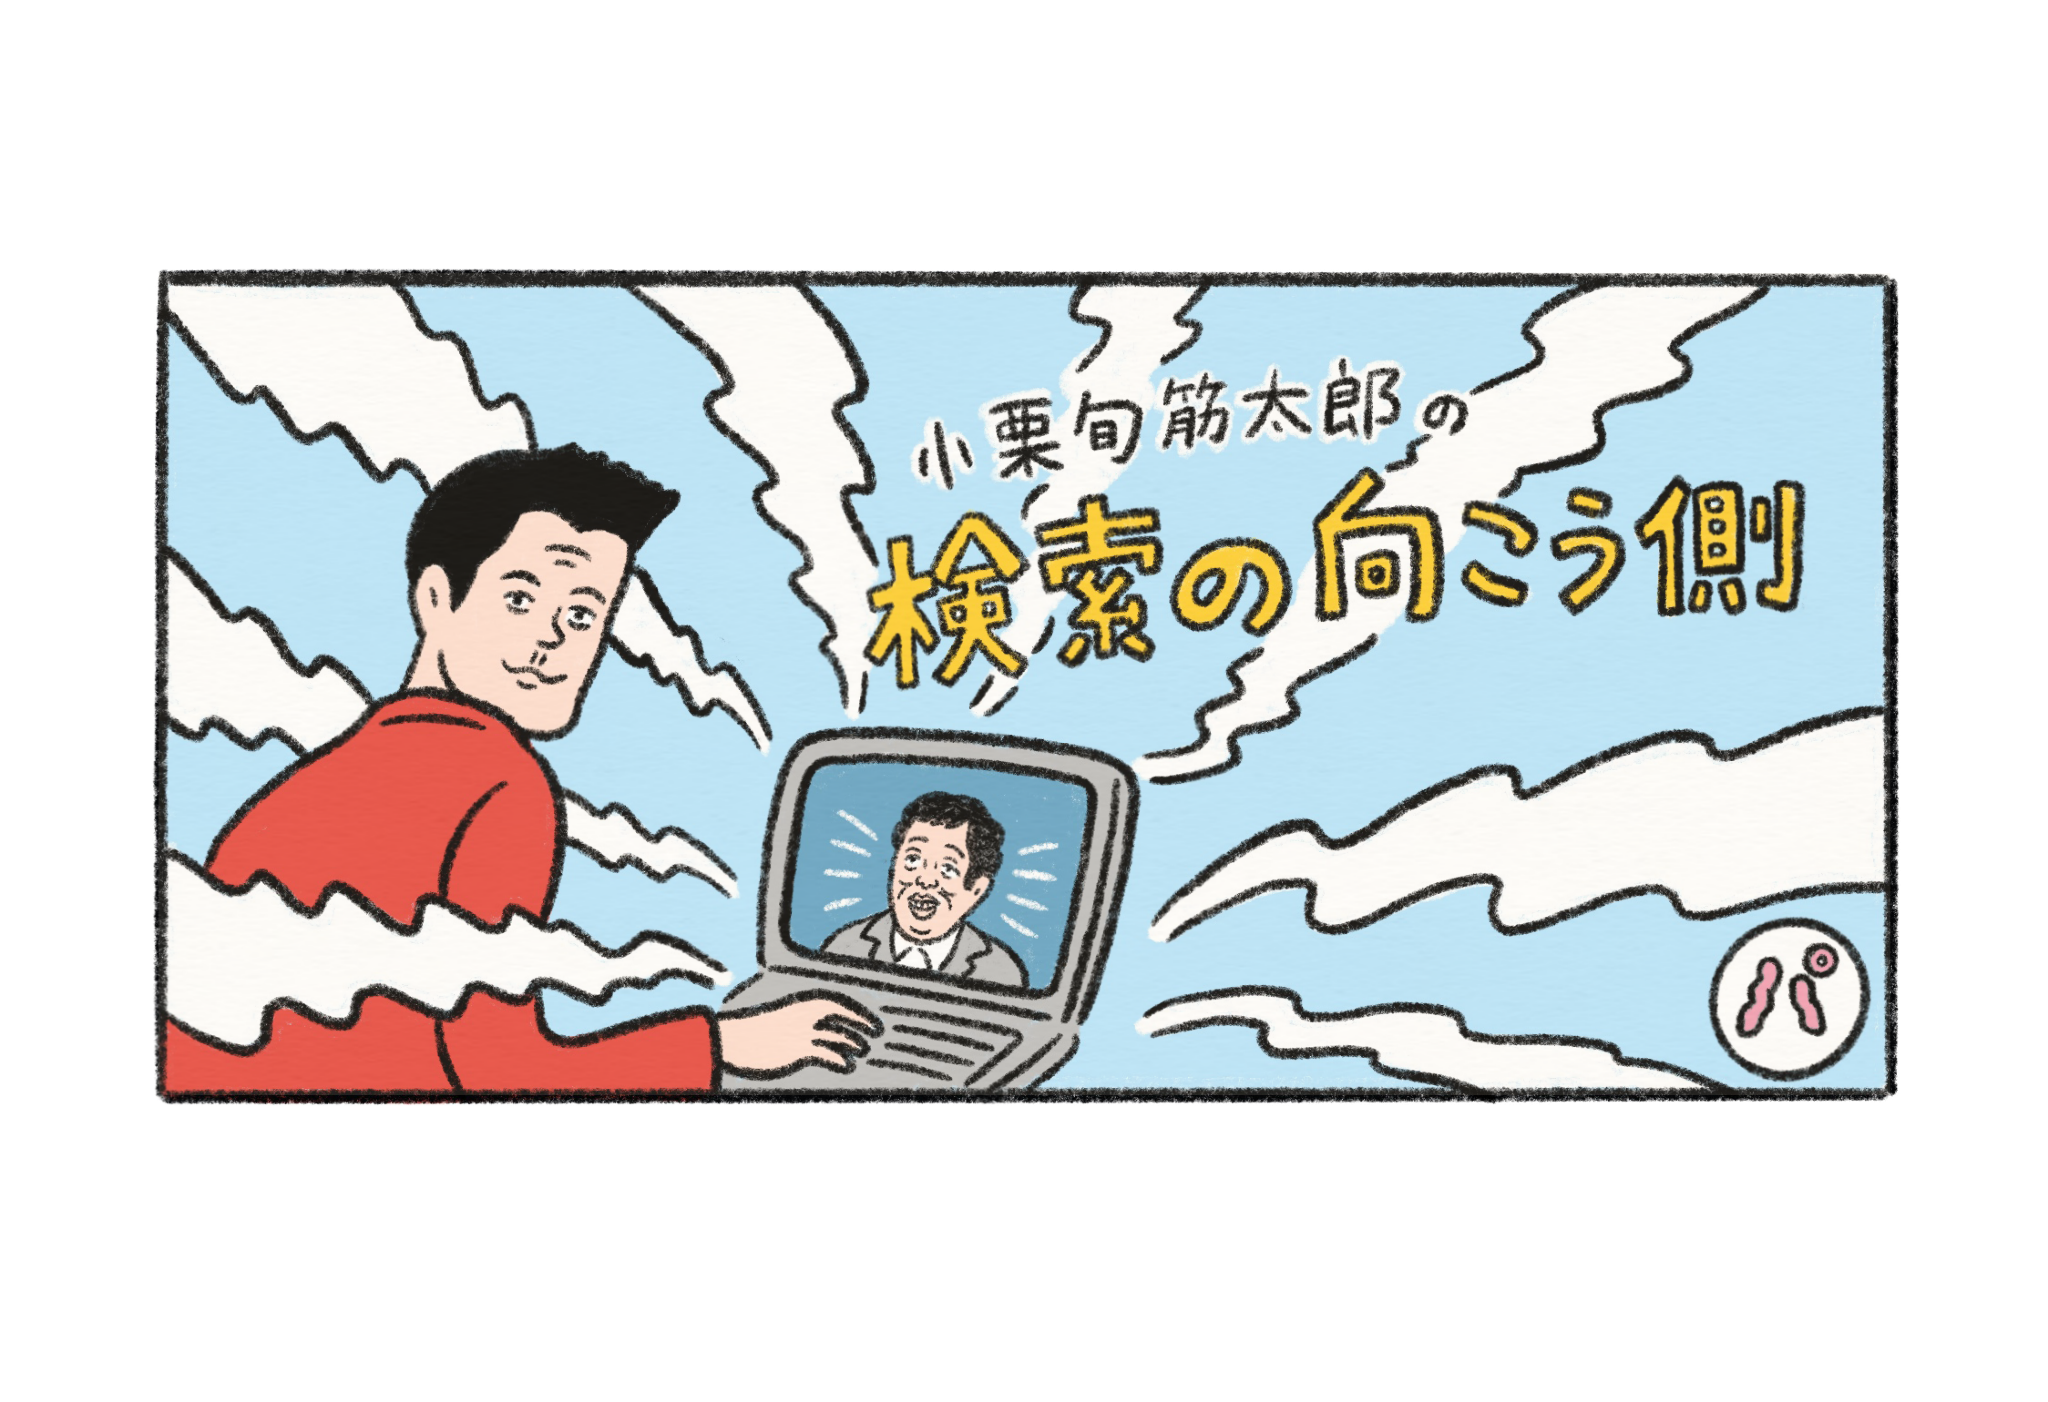 小栗旬筋太郎の検索の向こう側 25テレビアニメのop Ed曲 日常と日常のはざまメディア パヤパヤ